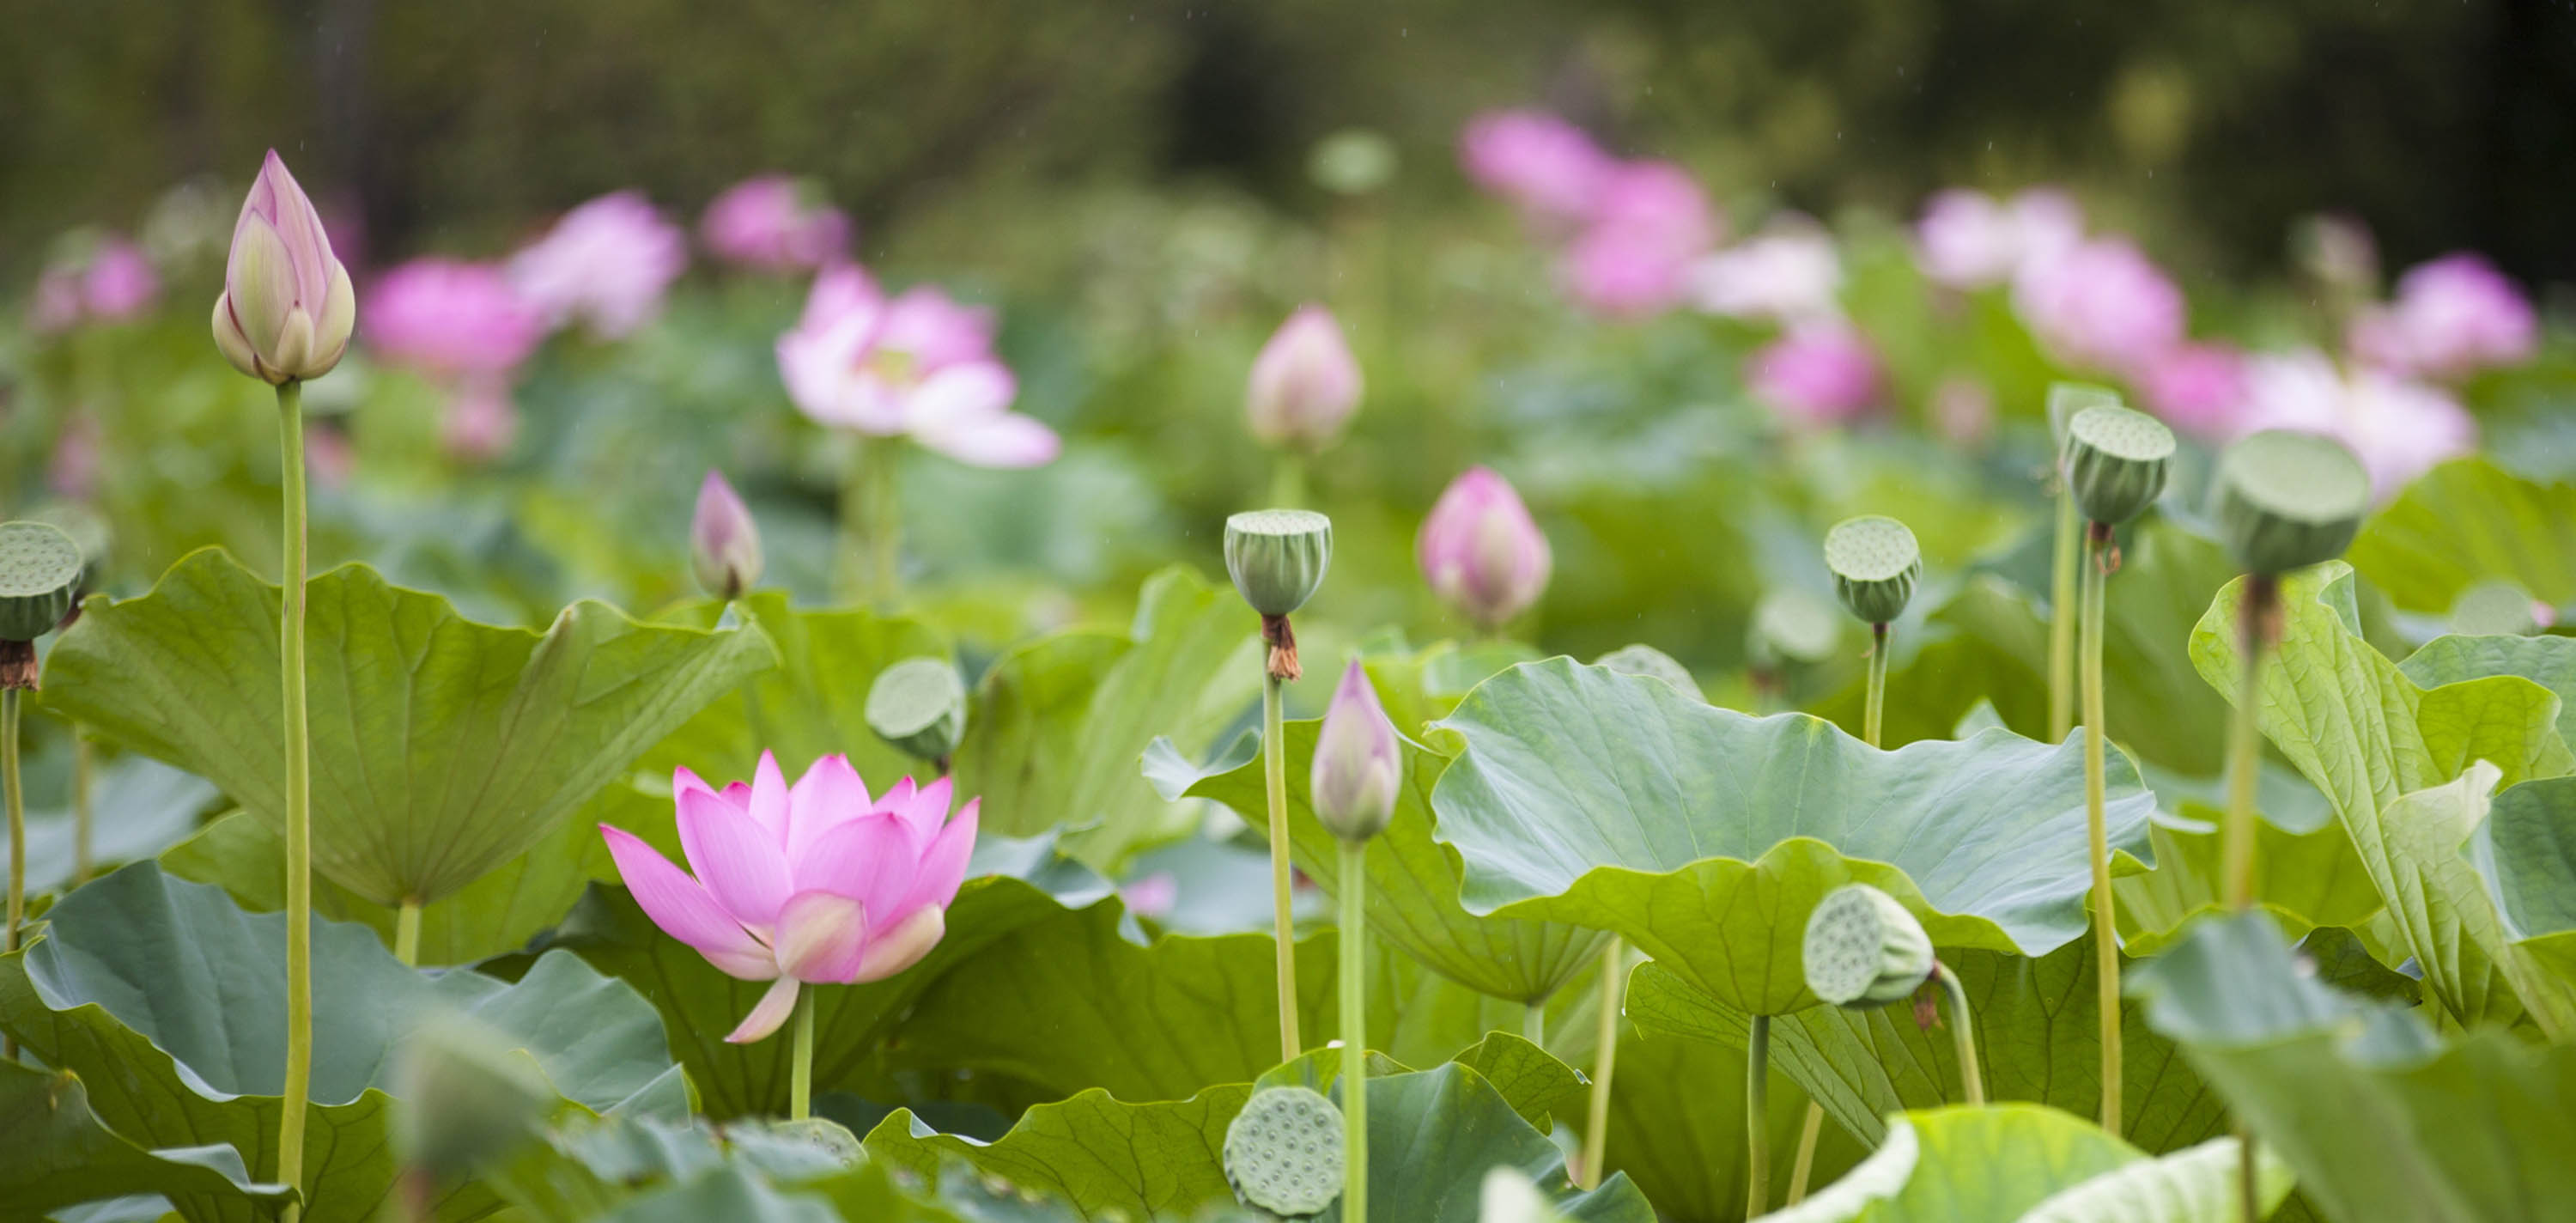 Field of pink lotuses